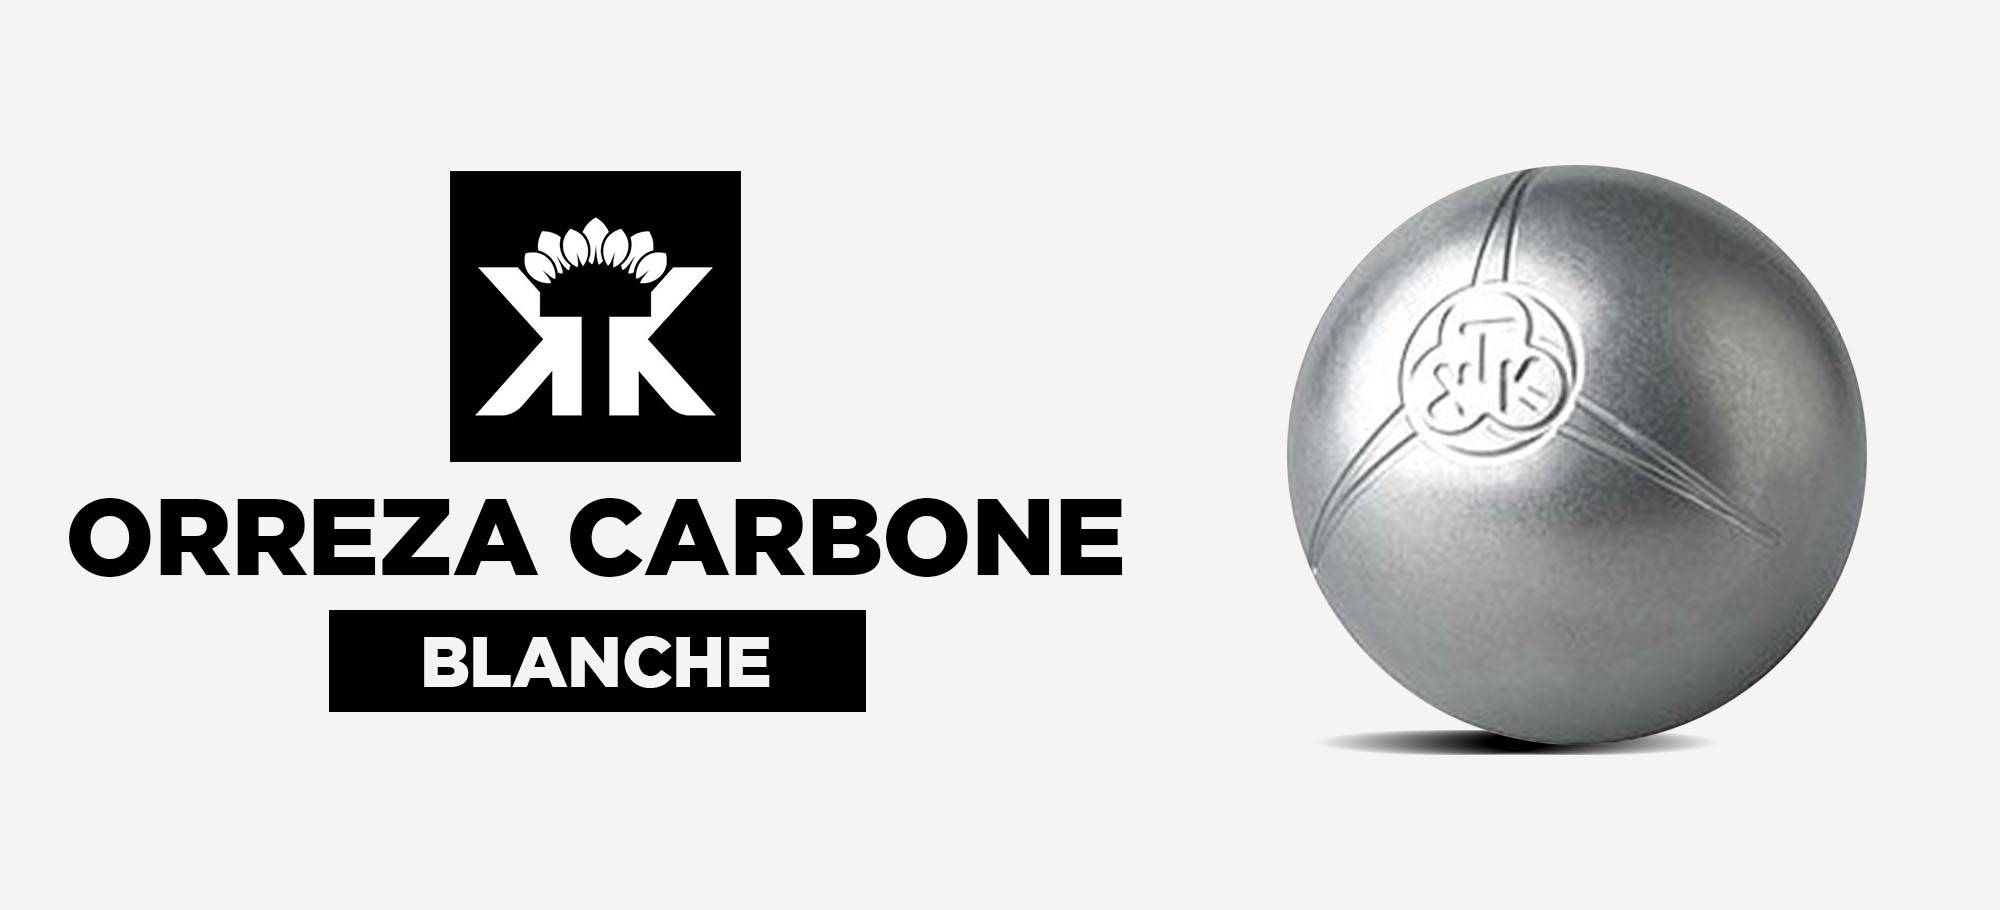 You are currently viewing Le point sur les boules de pétanque KTK Orreza carbone blanche